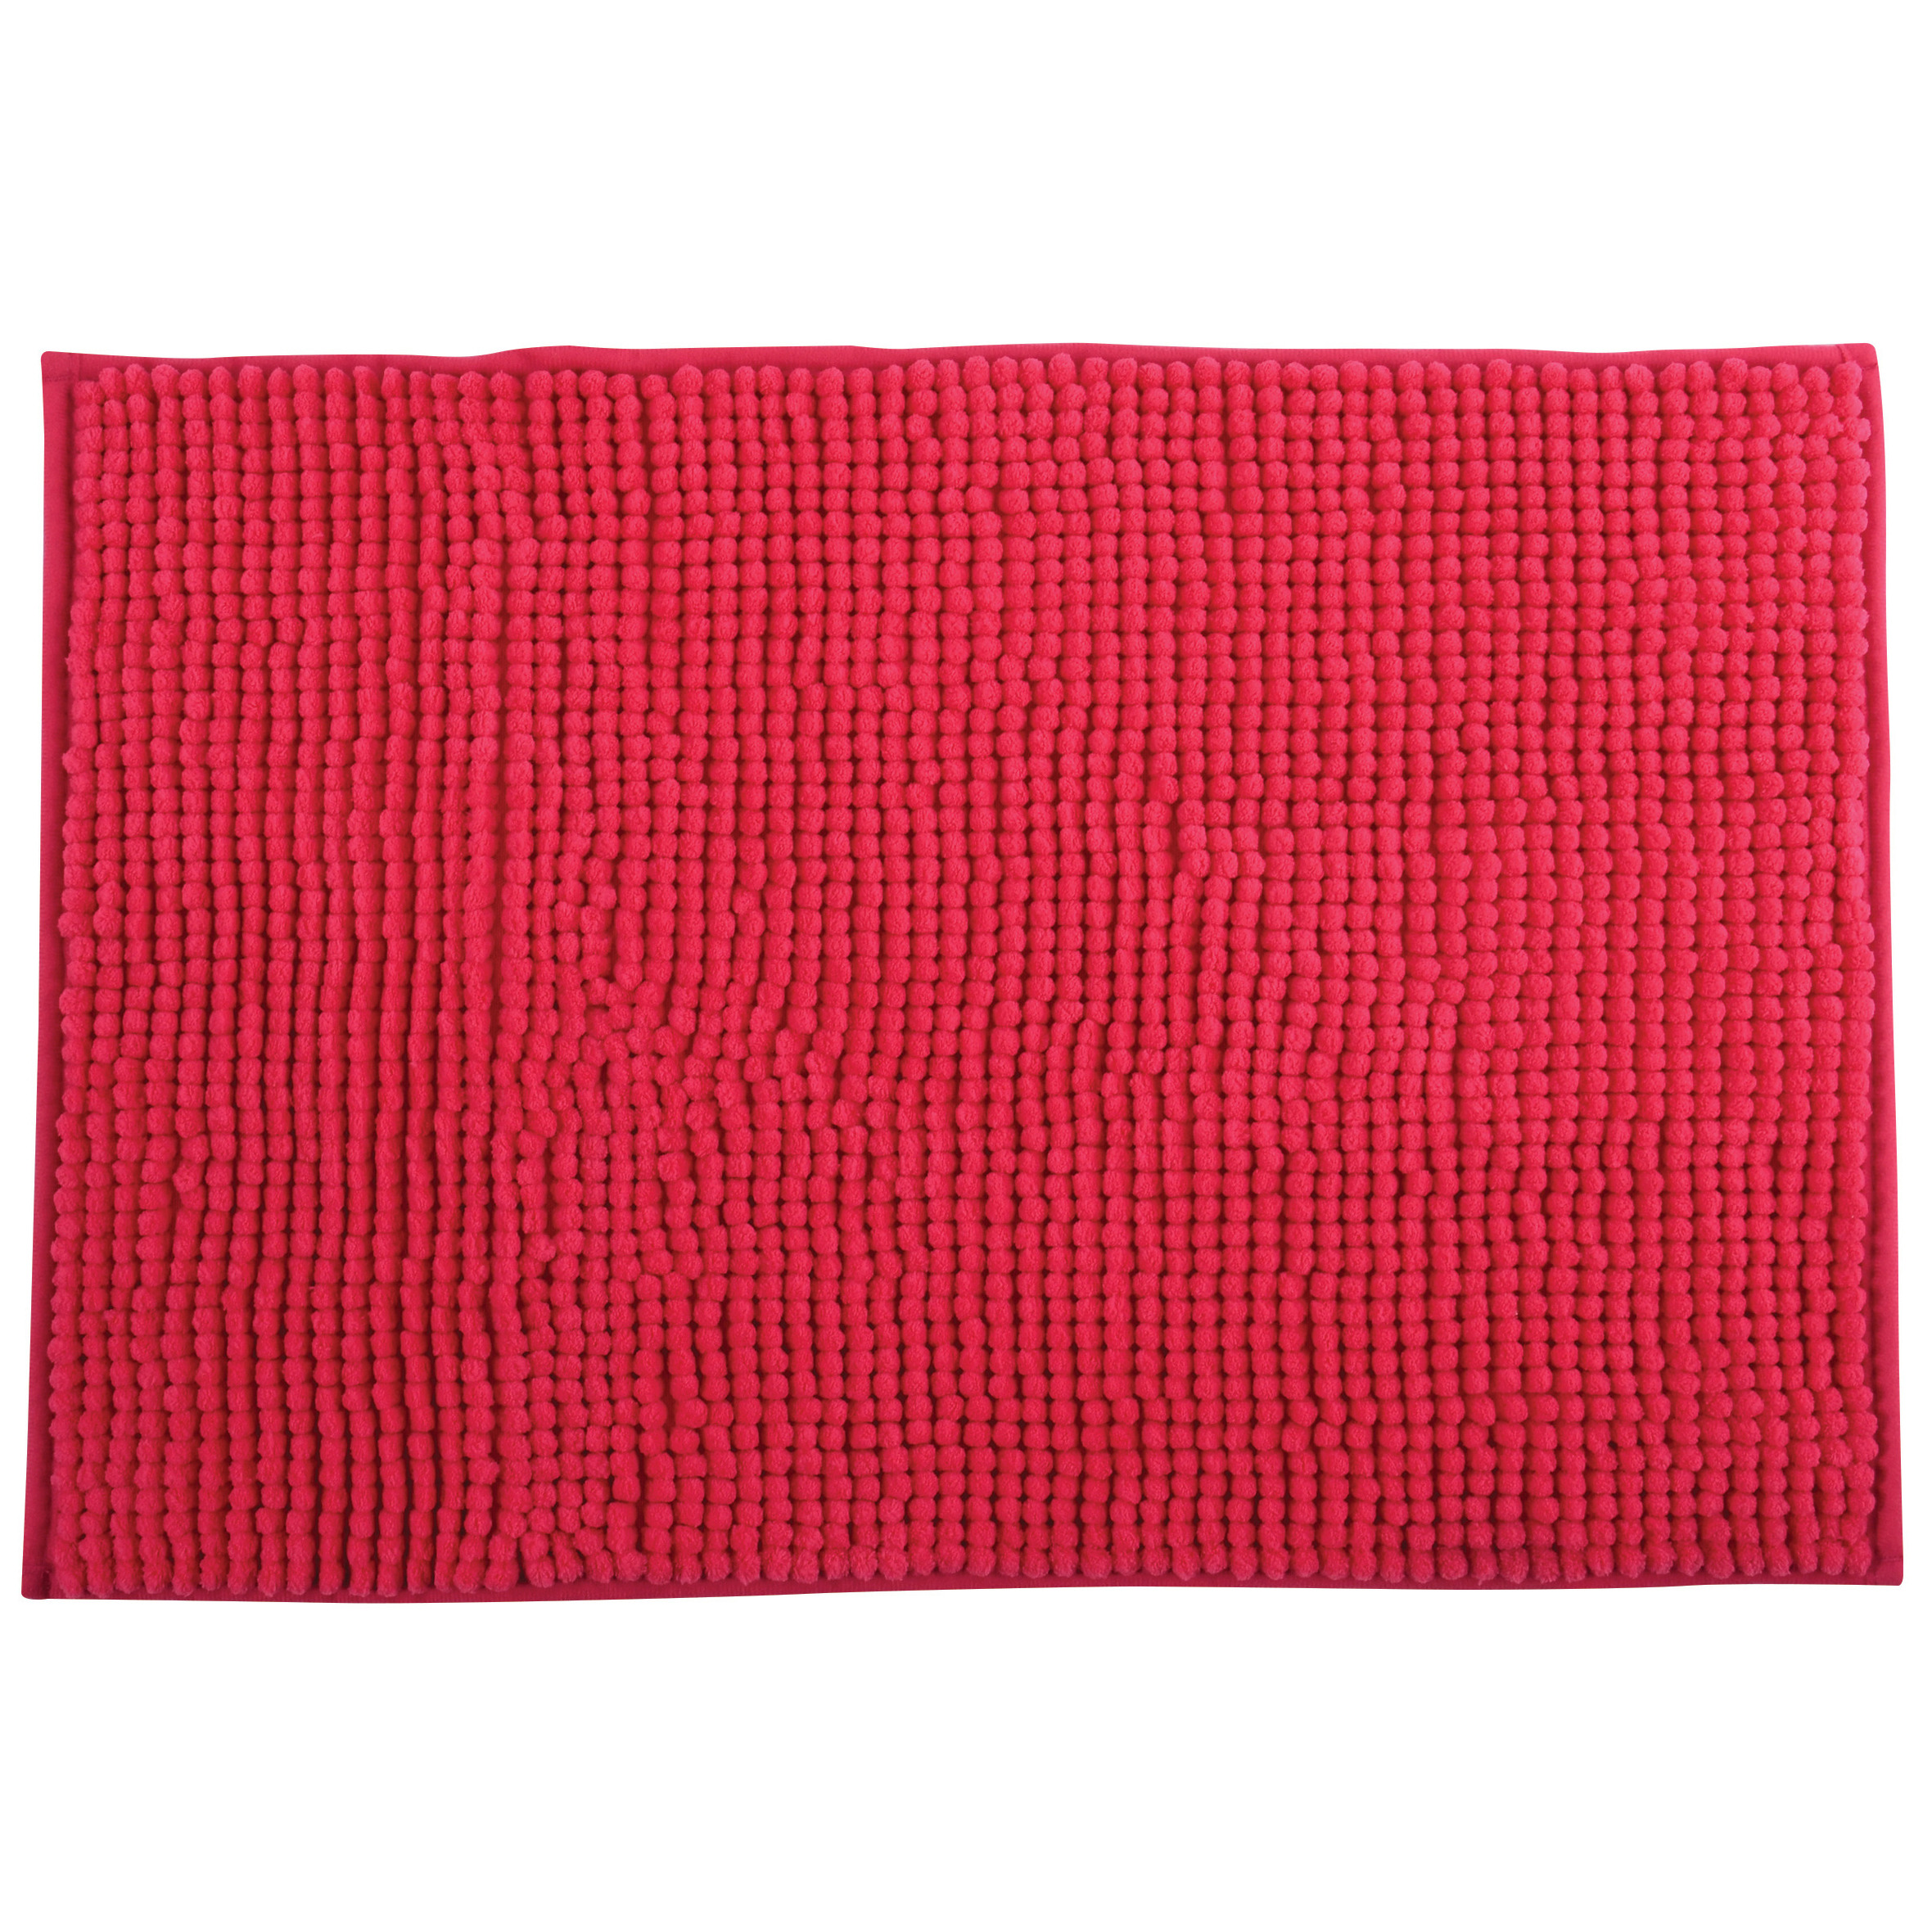 Badkamerkleedje-badmat tapijt voor op de vloer fuchsia roze 60 x 90 cm